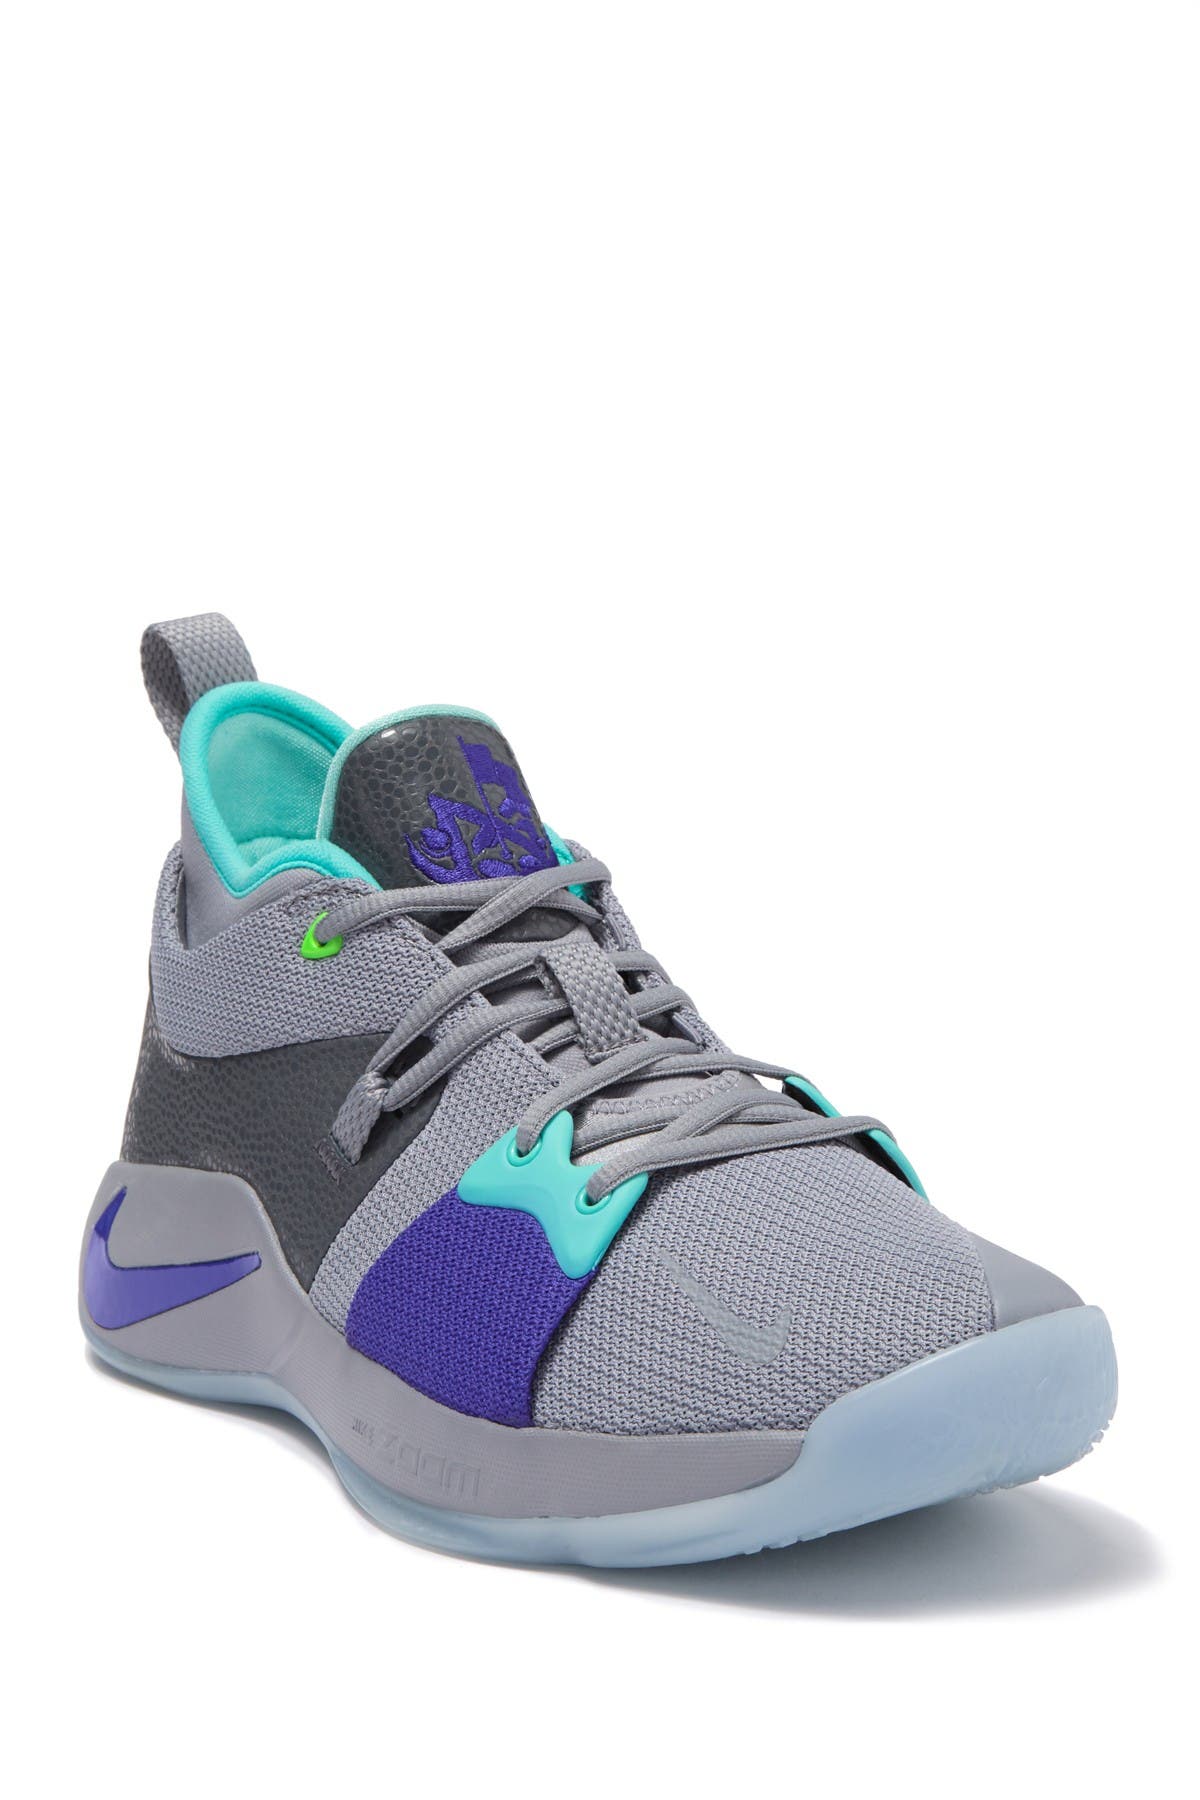 Nike | PG 2 Basketball Shoe | Nordstrom 